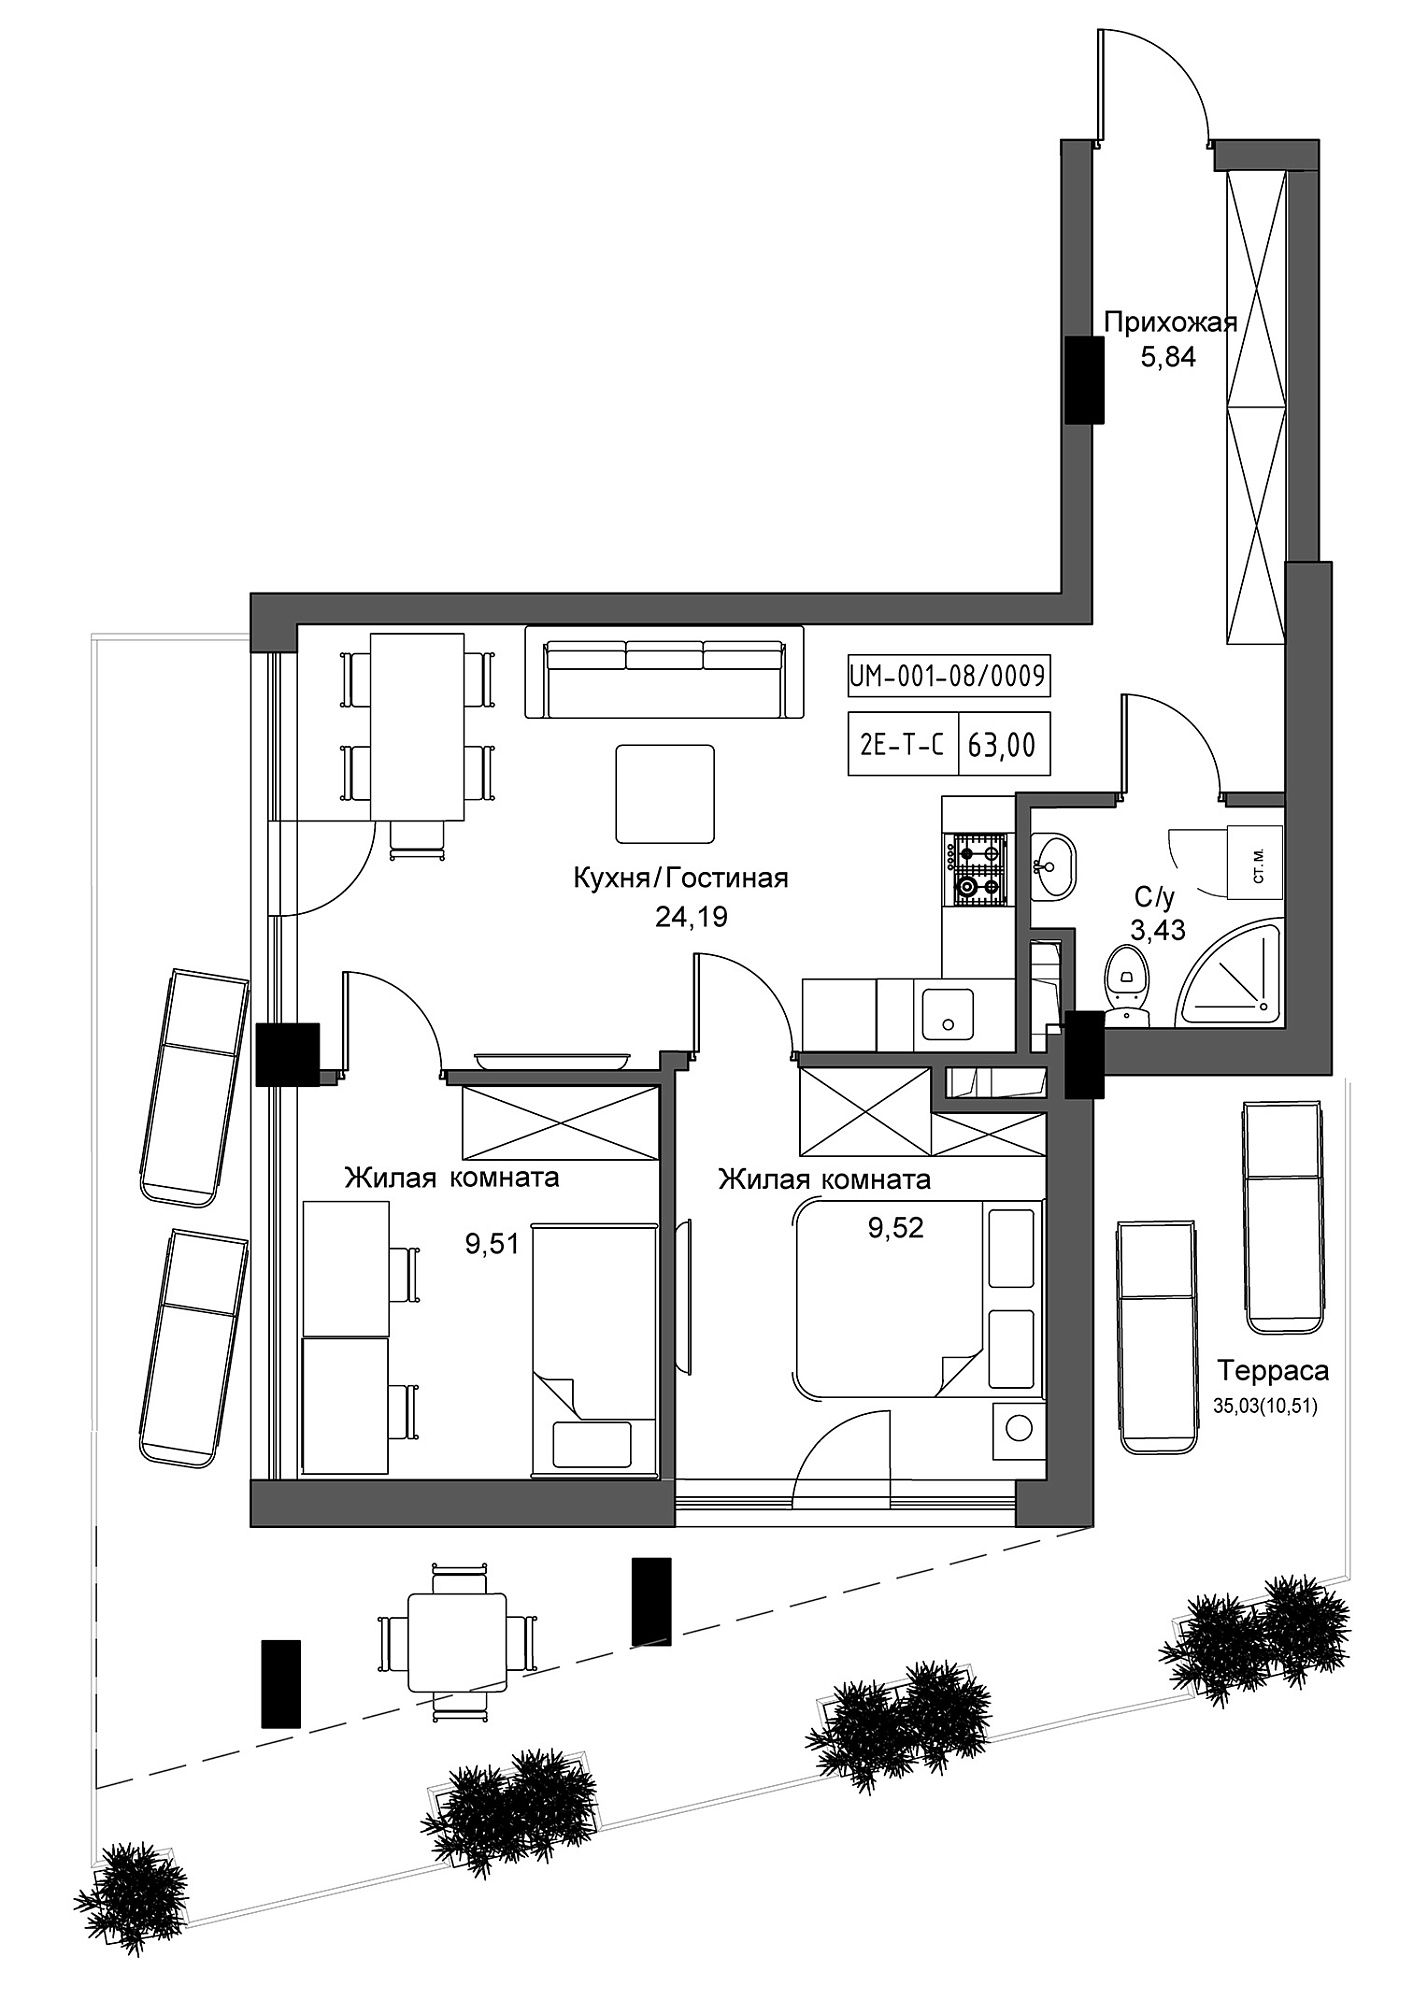 Планировка 2-к квартира площей 63м2, UM-001-08/0009.